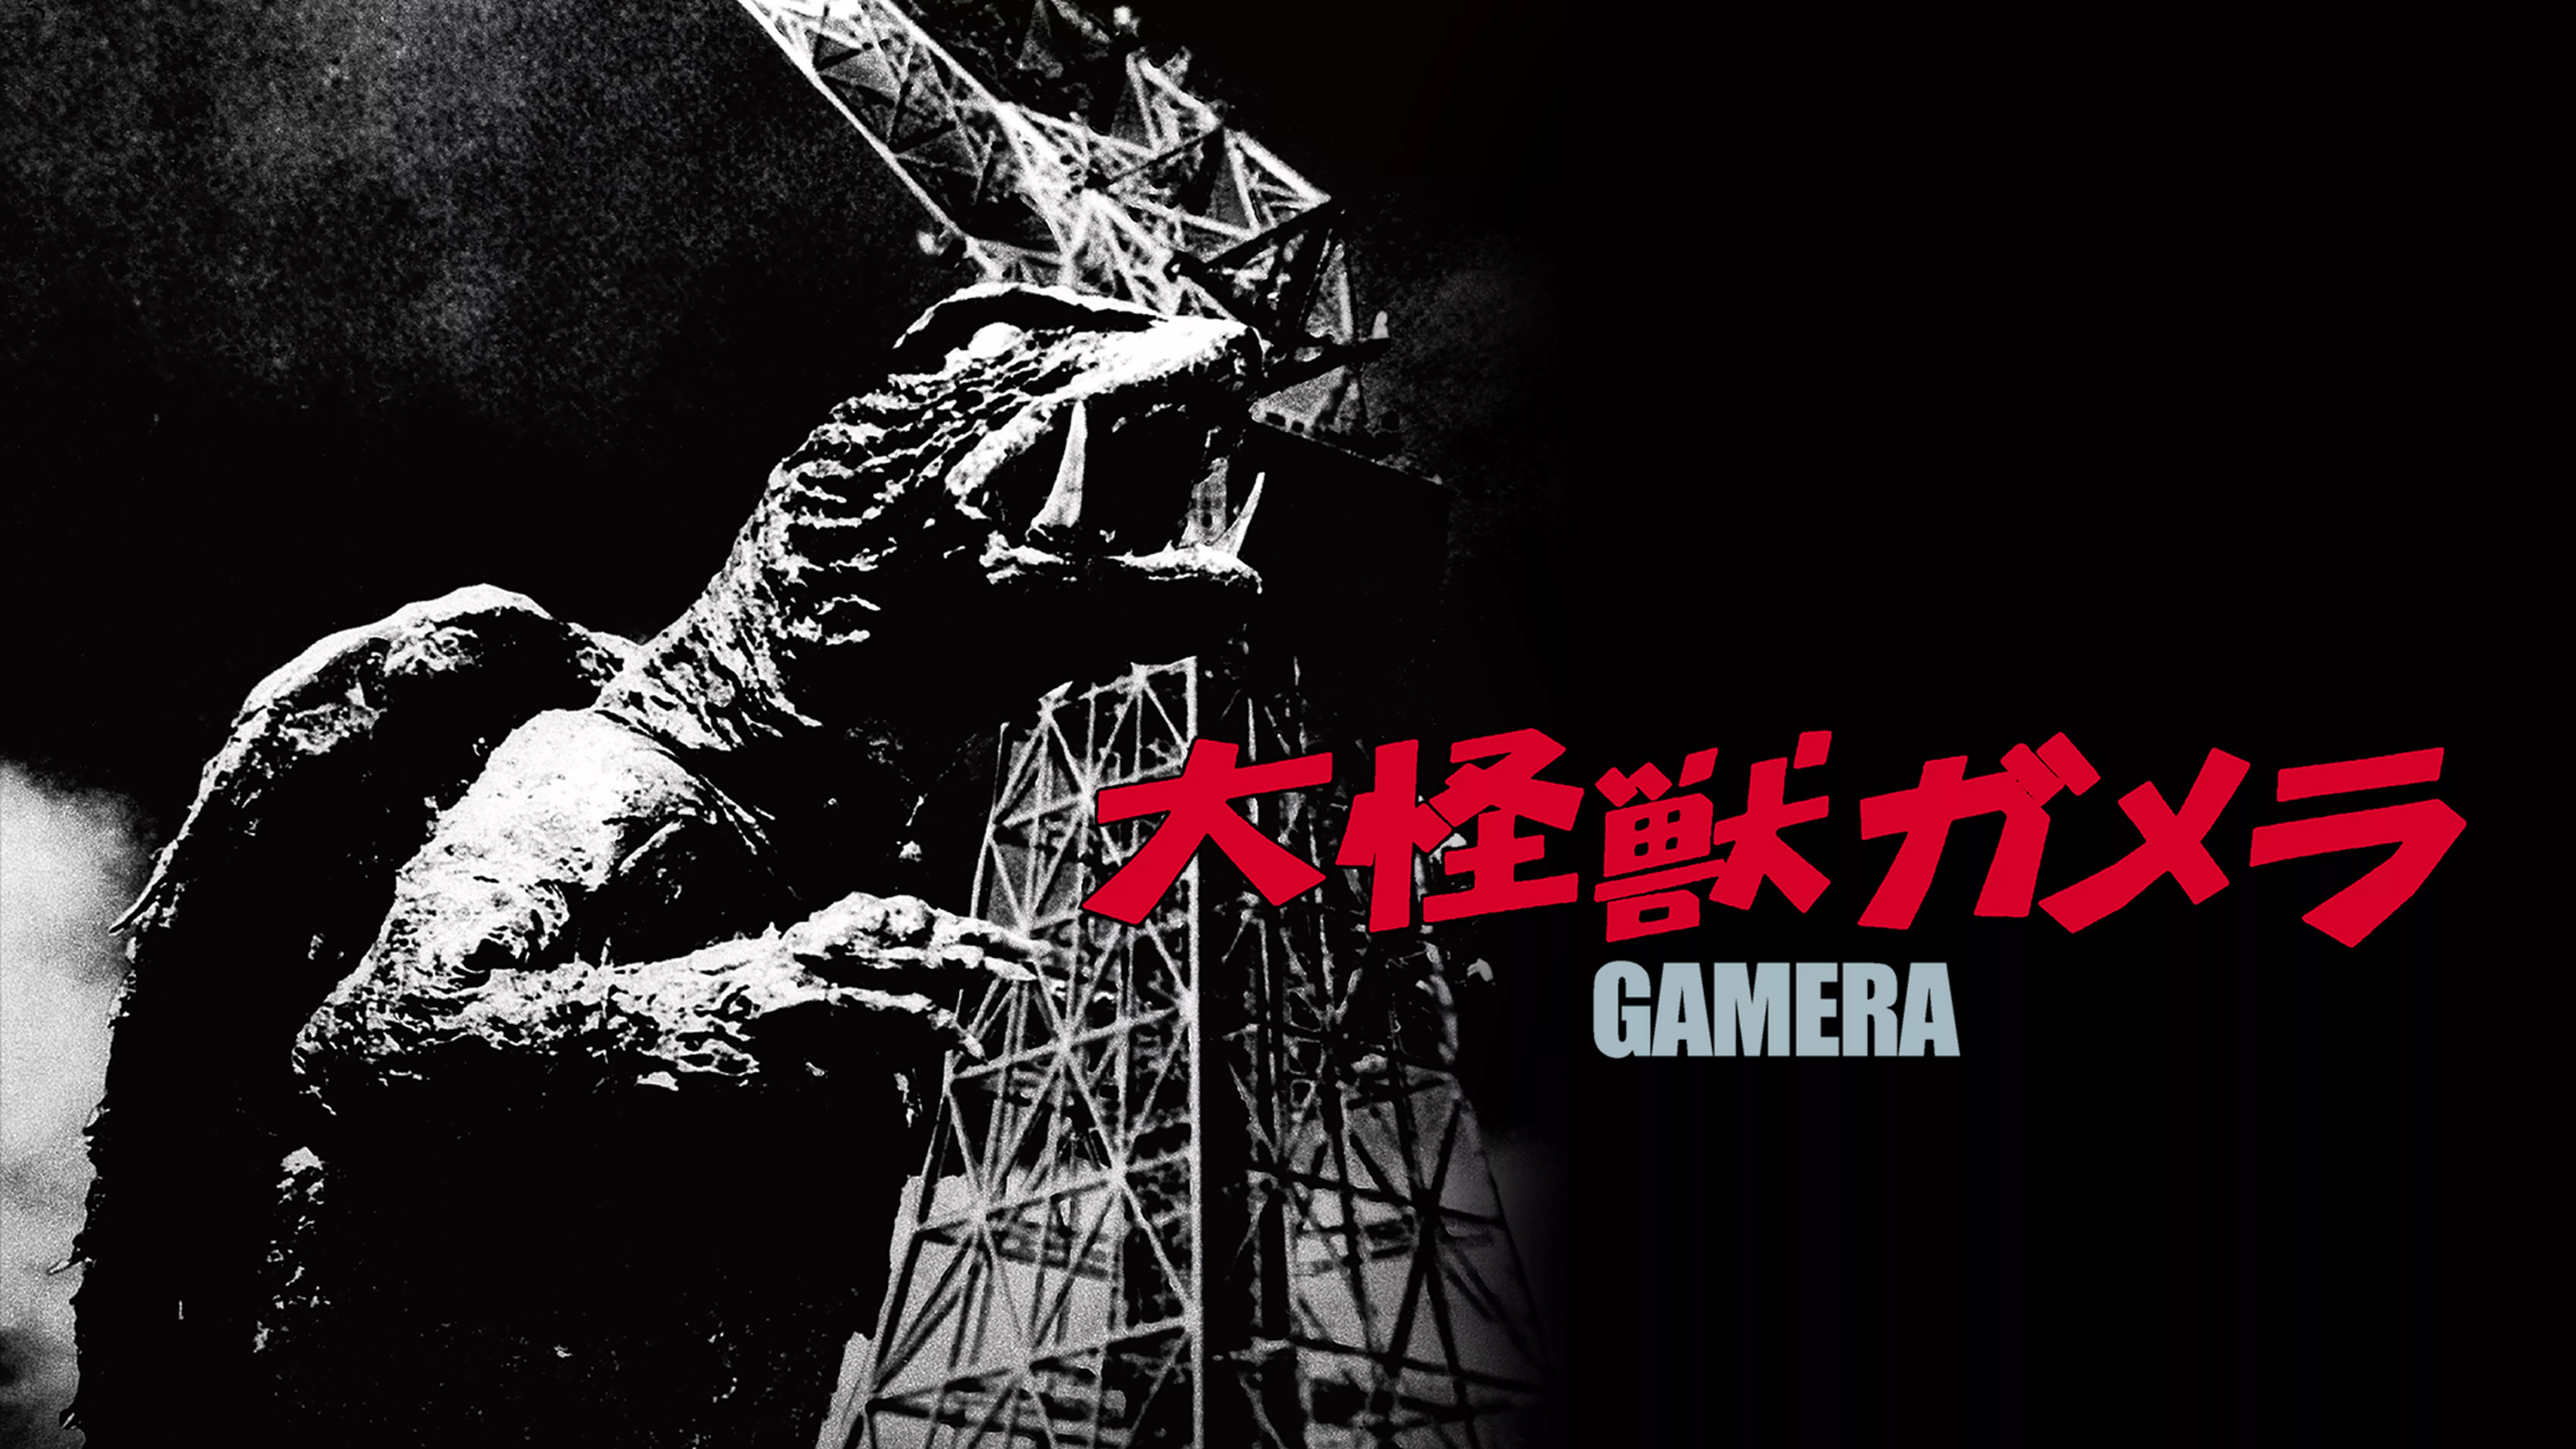 ガメラ 大怪獣空中決戦(邦画 / 1995) - 動画配信 | U-NEXT 31日間無料 